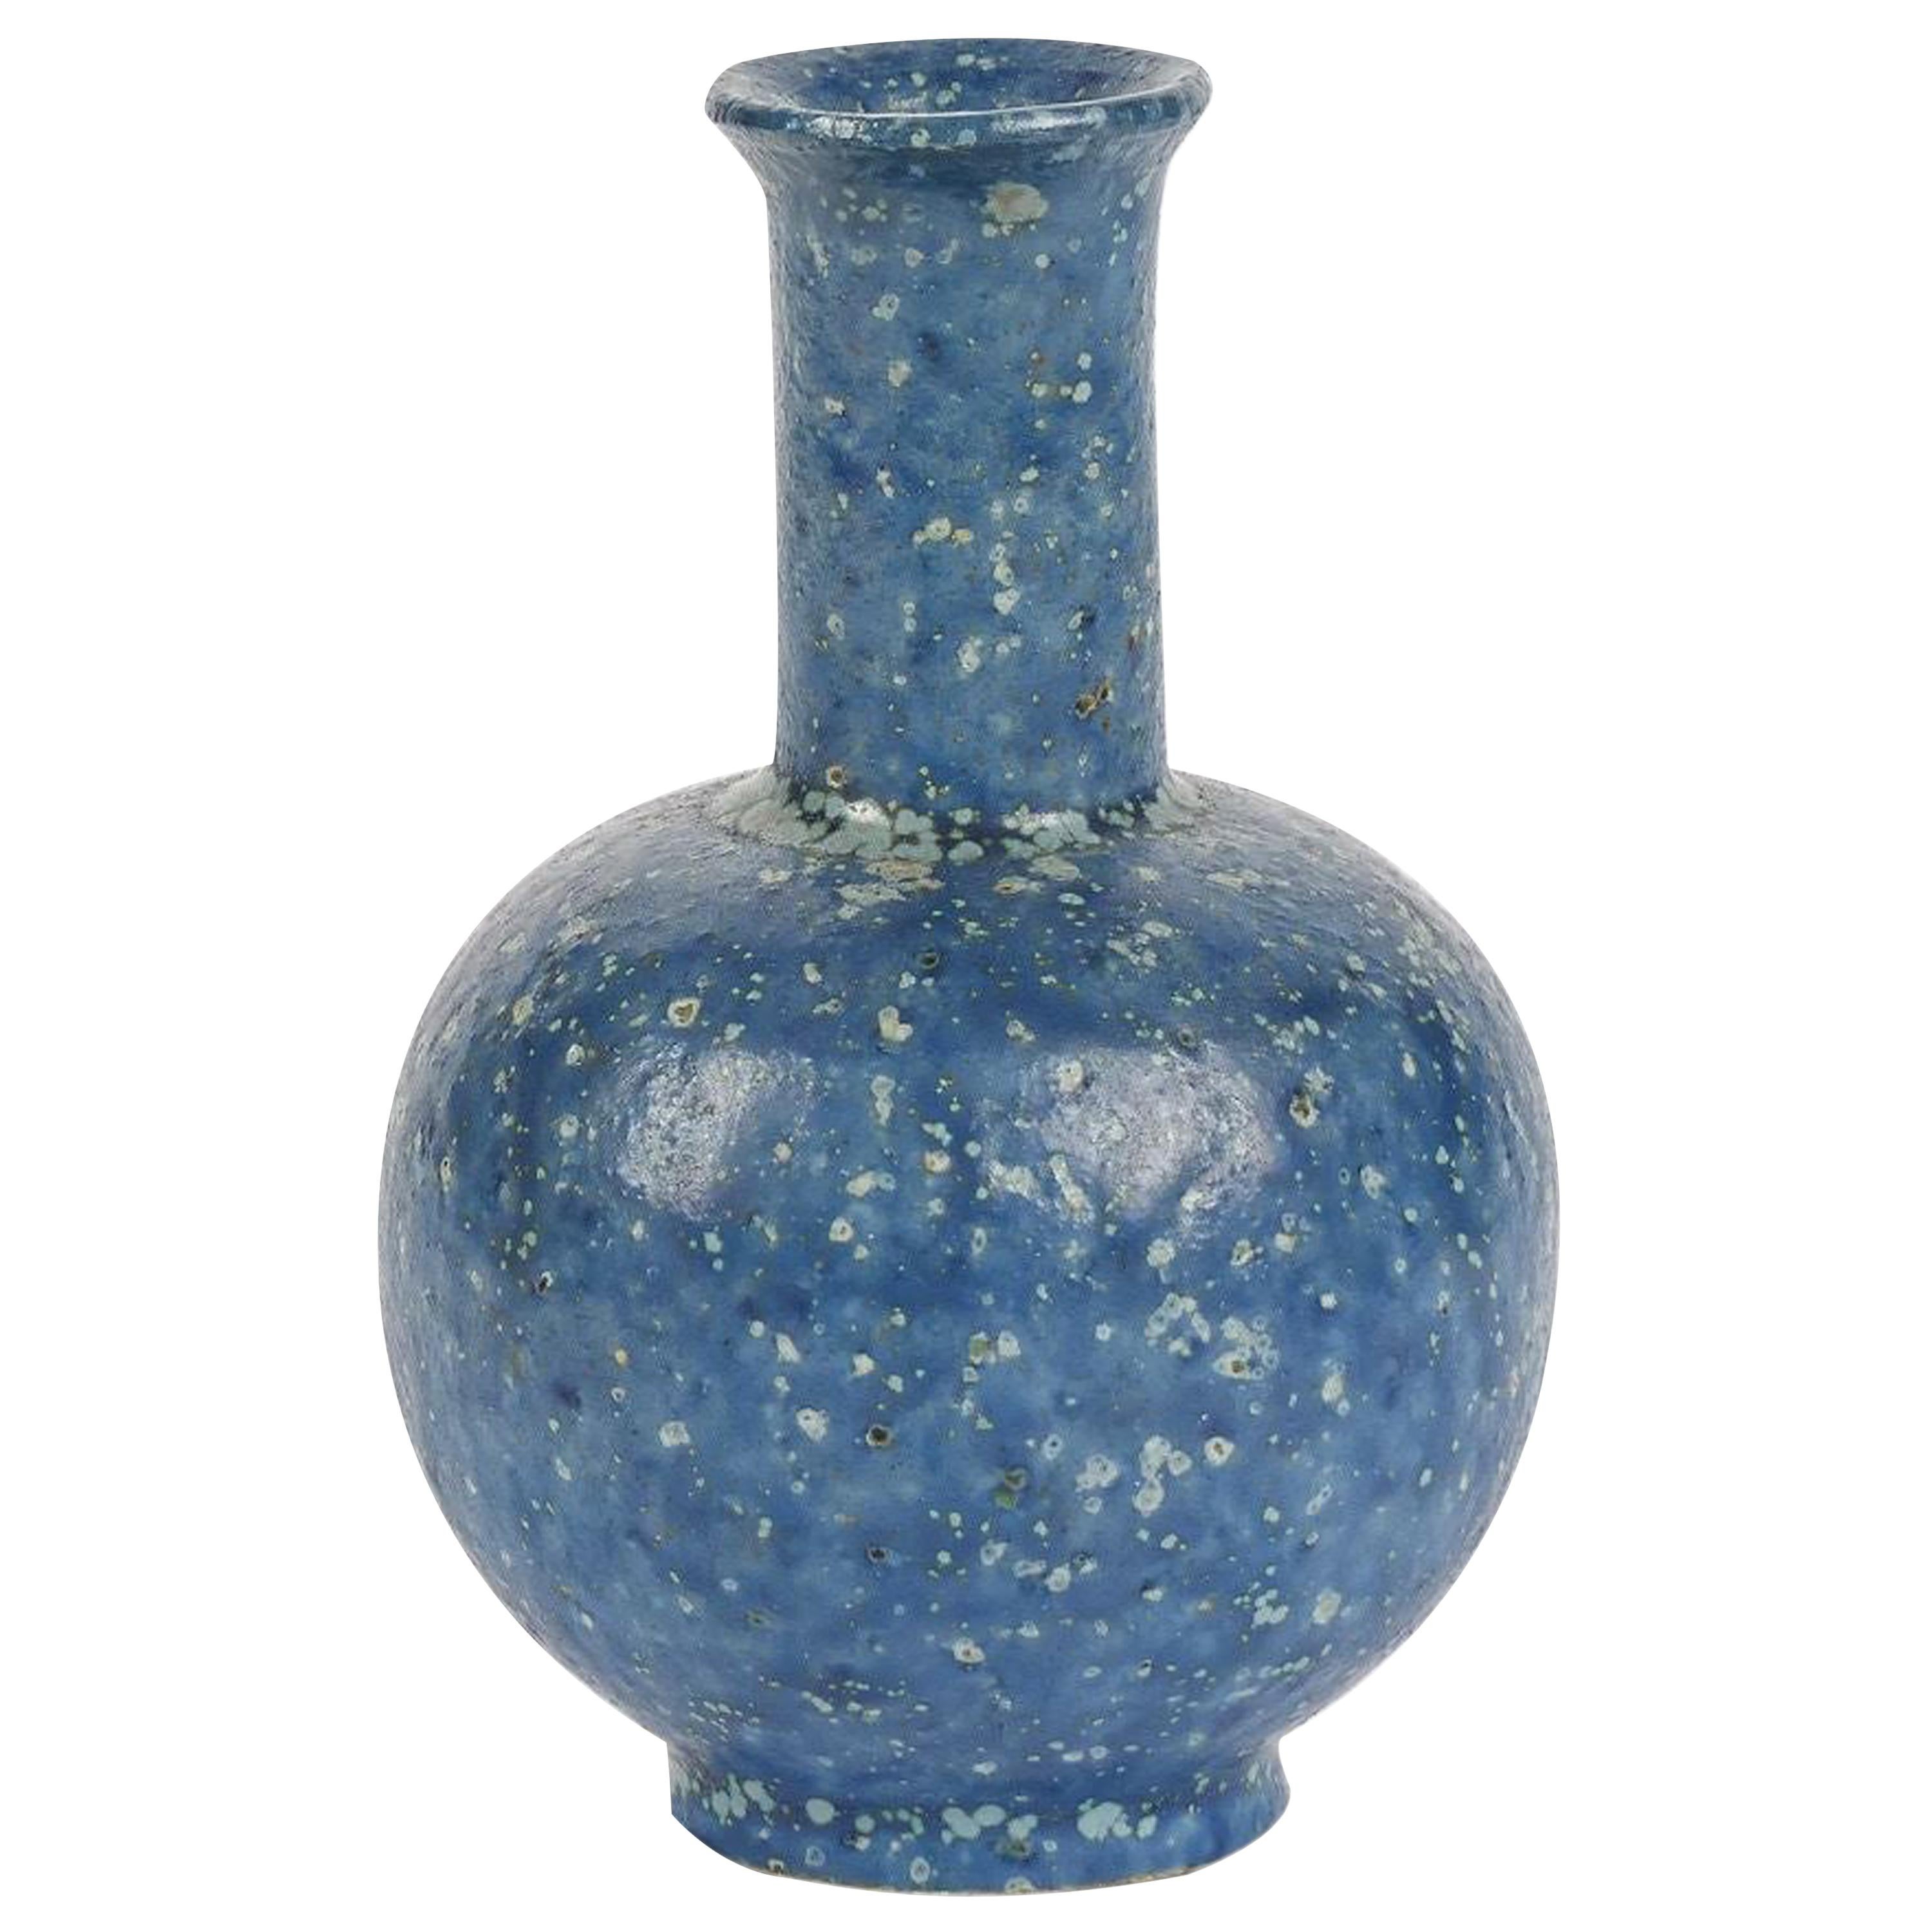 Arne Bang, Small Speckled Blue Ceramic Vase, Denmark, 1930s